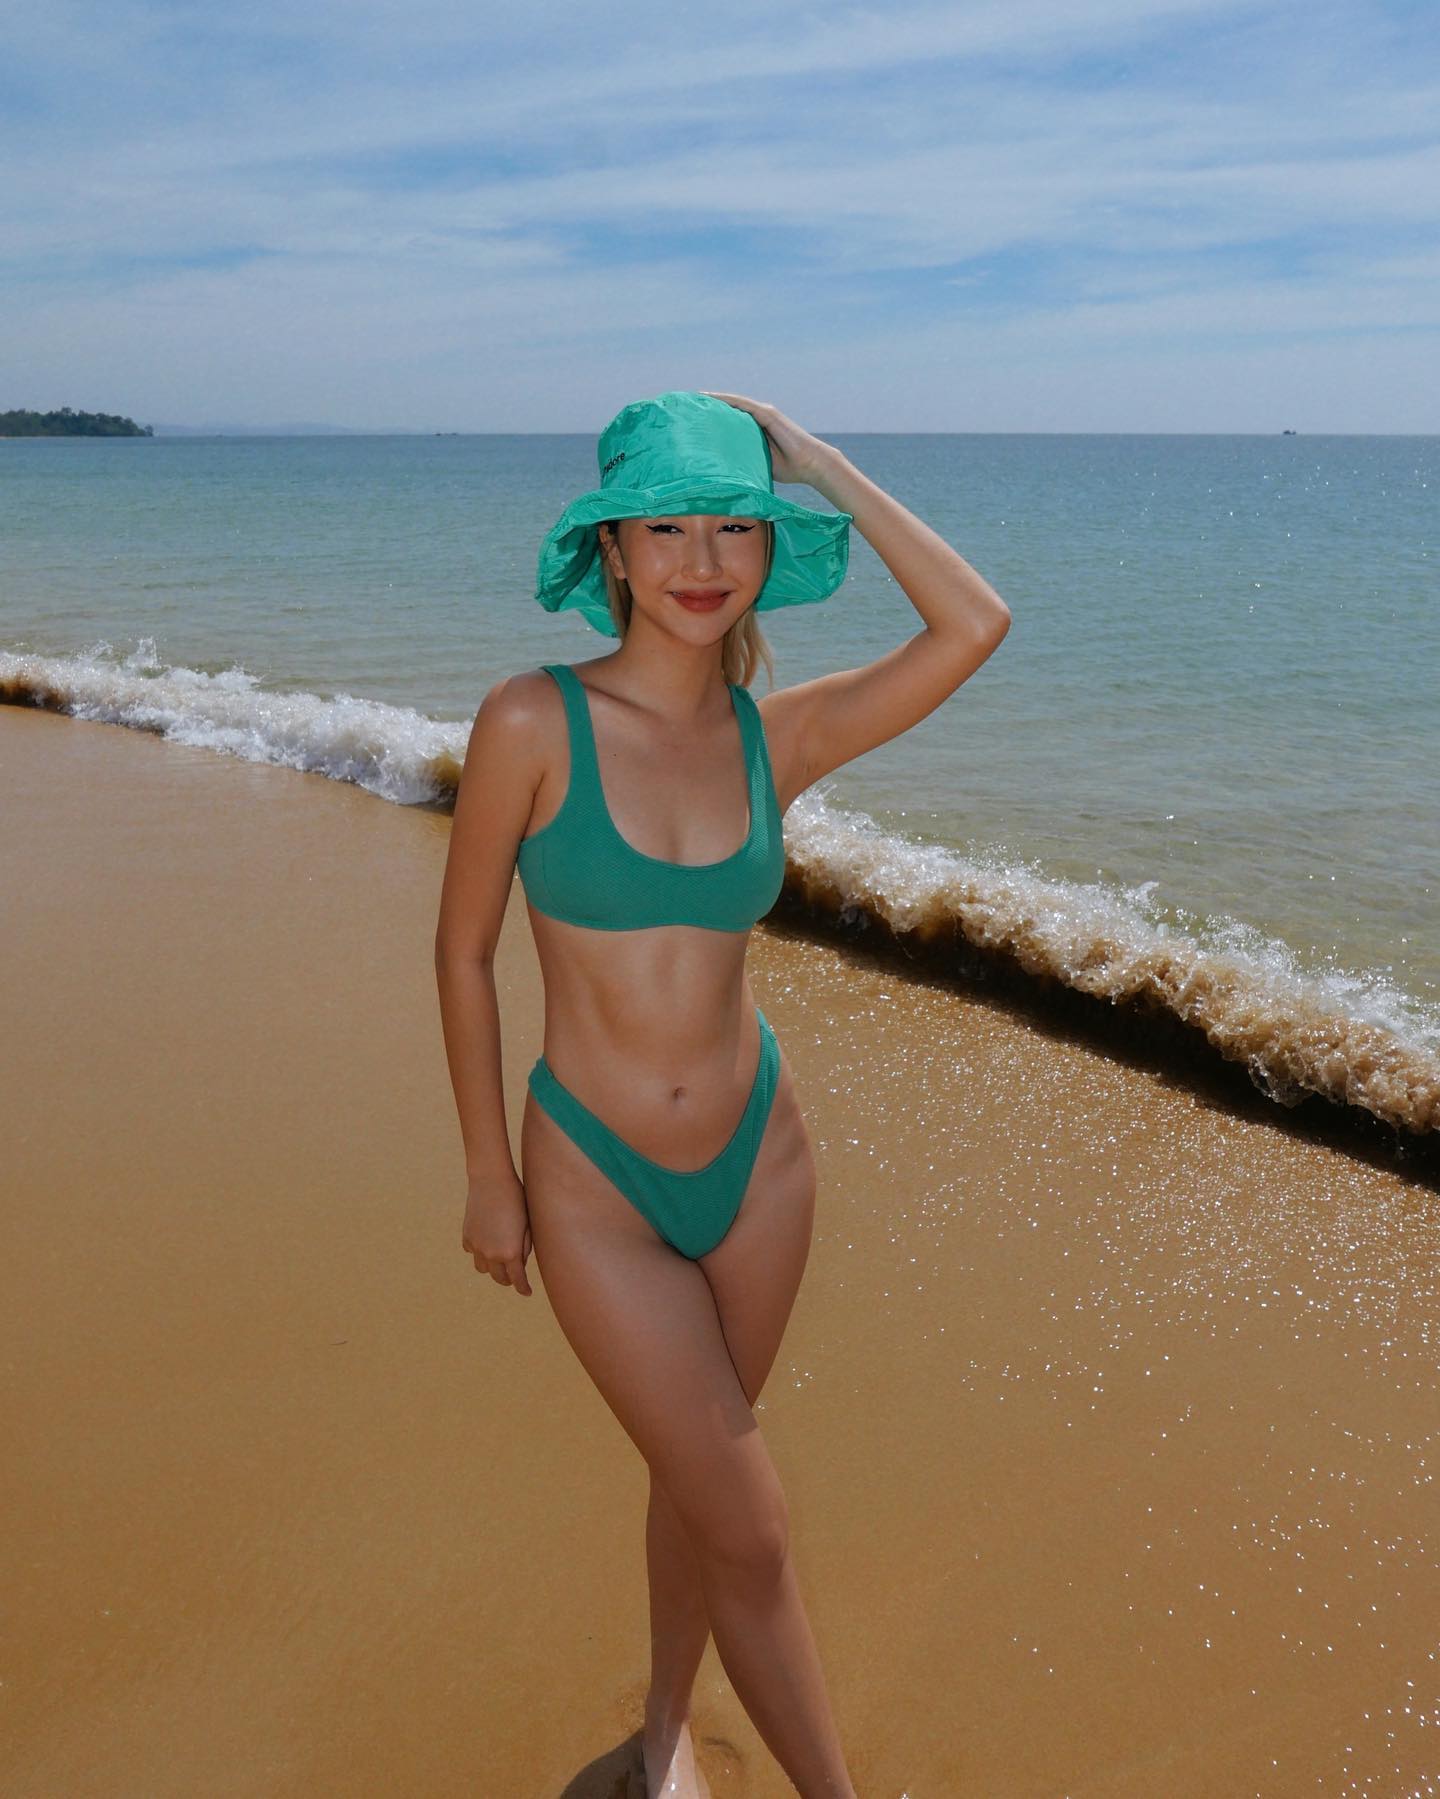 Quỳnh Anh Shyn diện bikini xanh nổi bật, khoe cơ bụng săn chắc nổi rõ, làn da khỏe khoắn, rạng ngời.